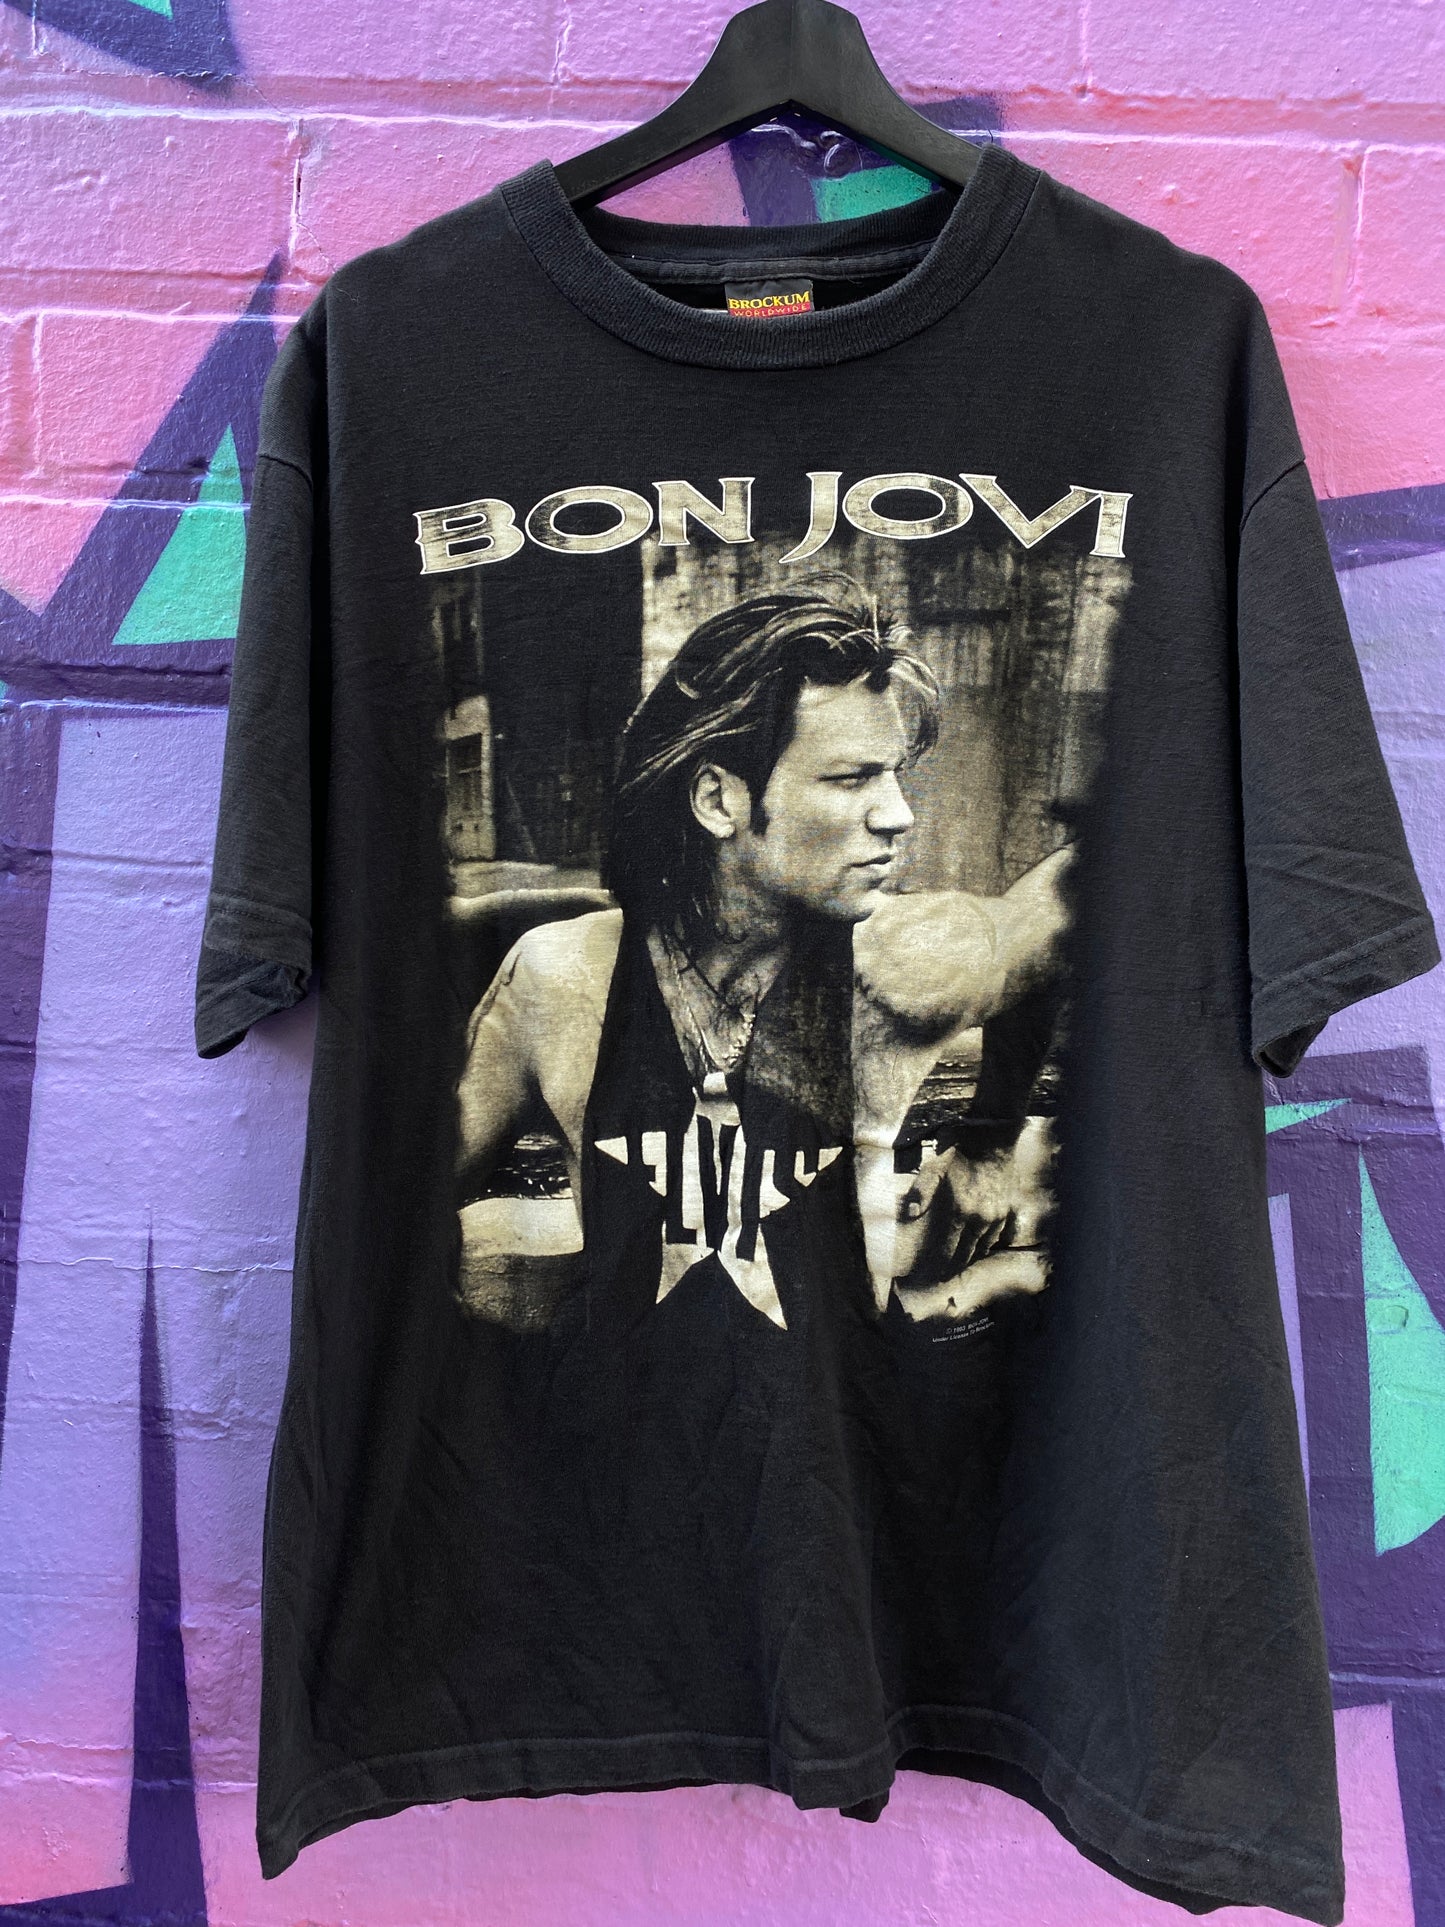 XL - 1993 Bon Jovi World Tour